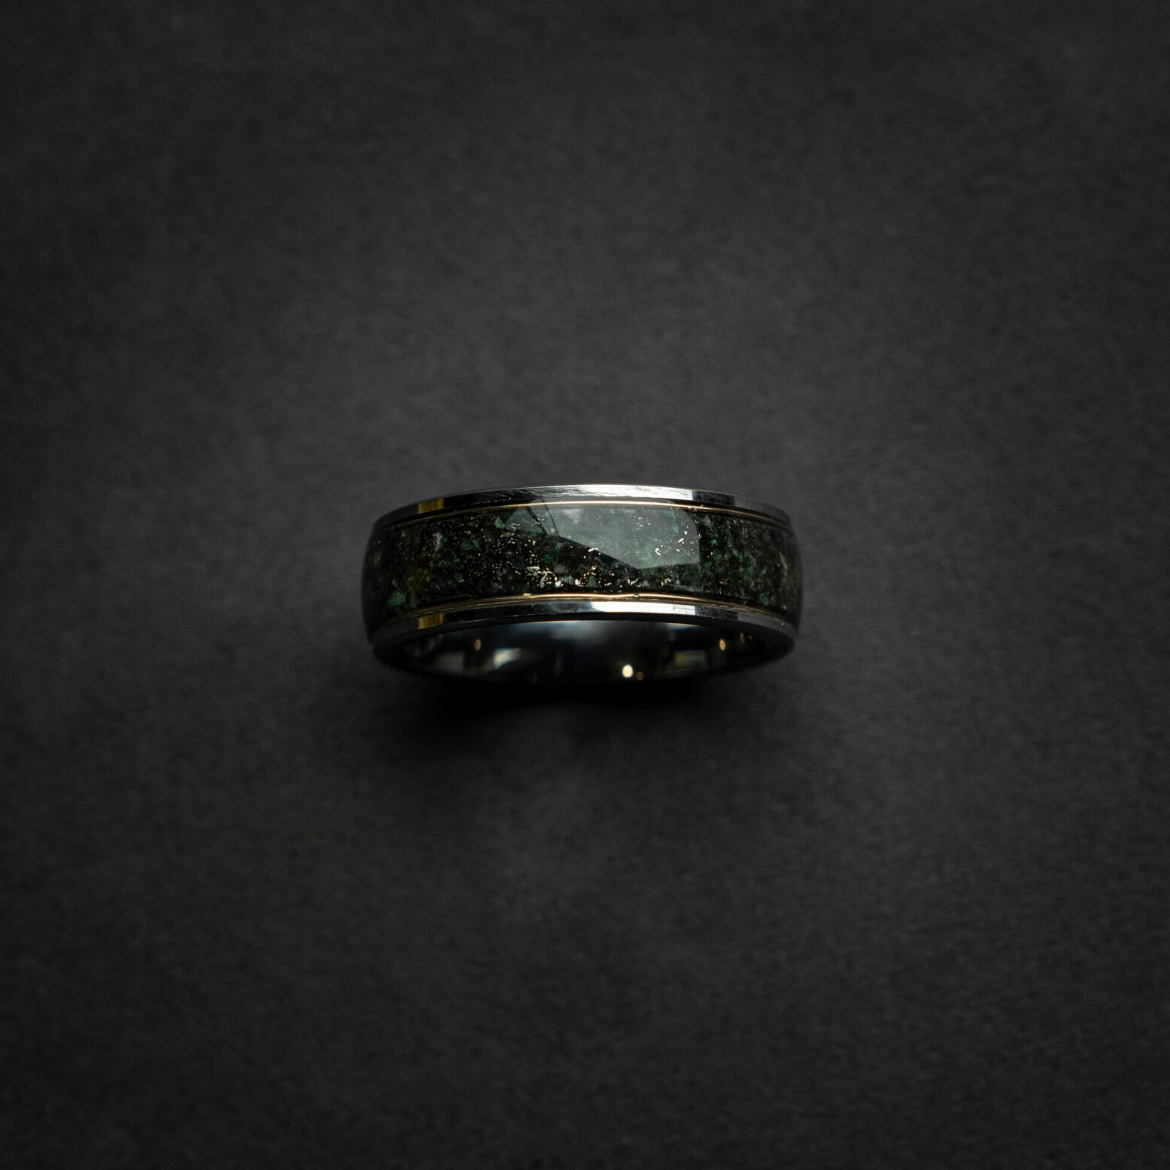 Silver Tungsten Ring, Genuine Moss Agate, Muonionalusta meteorite, 18k Yellow Golden Wires